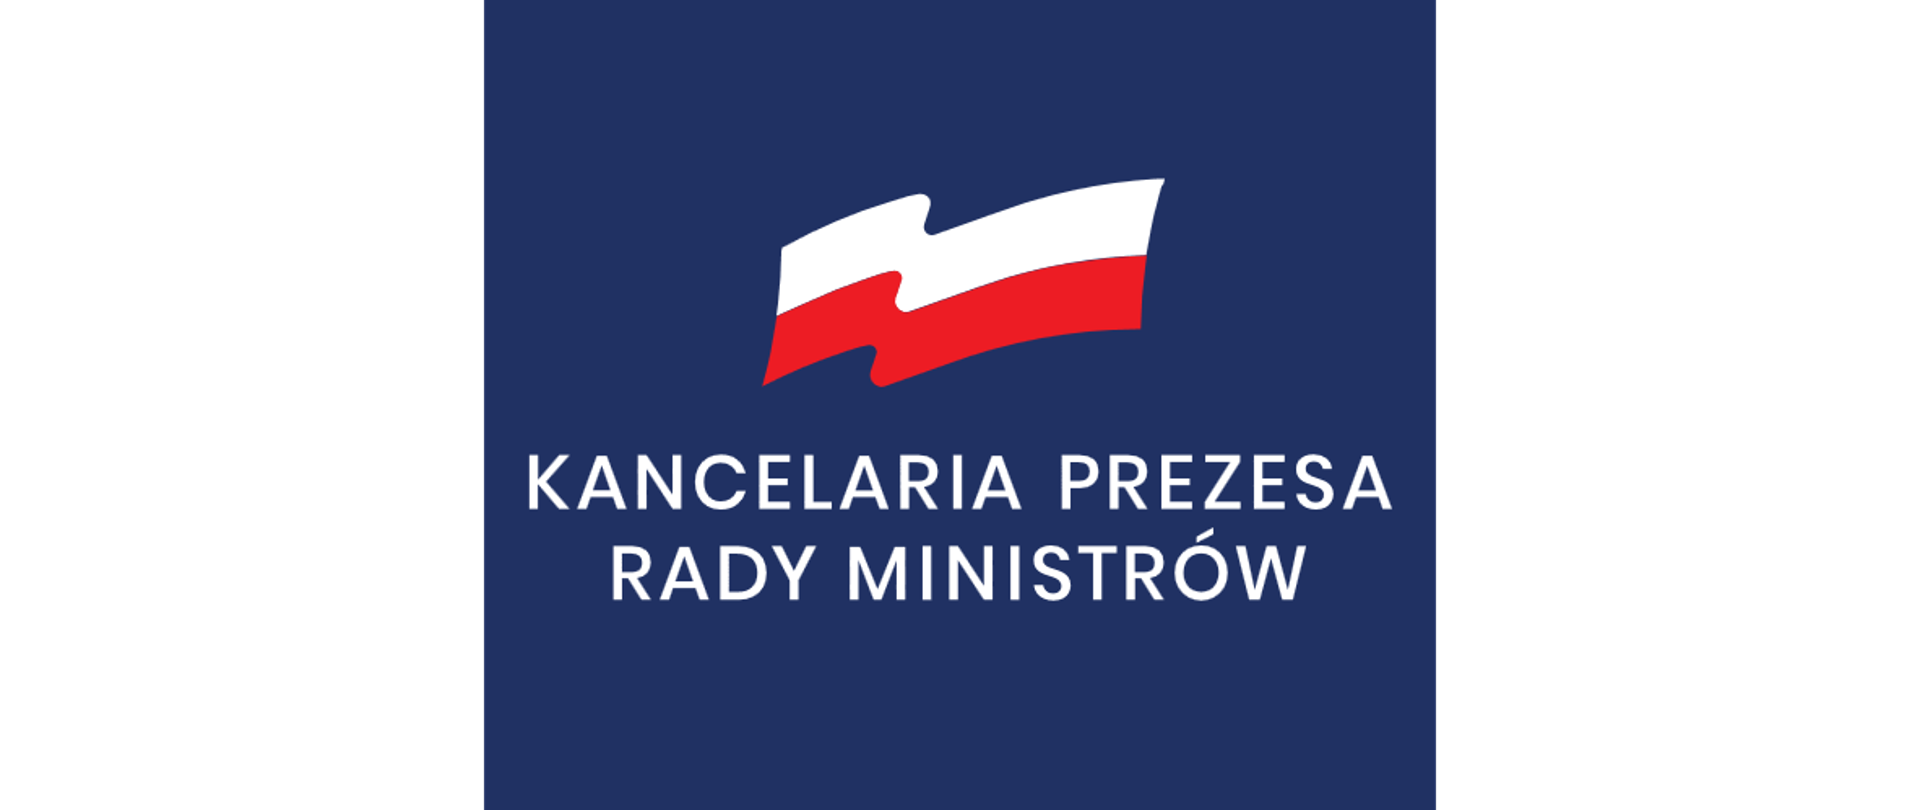 logo w pionie. piało-czerwona flaga, poniżej biały napis Kancelaria Prezesa Rady Ministrów. Tło granatowe.